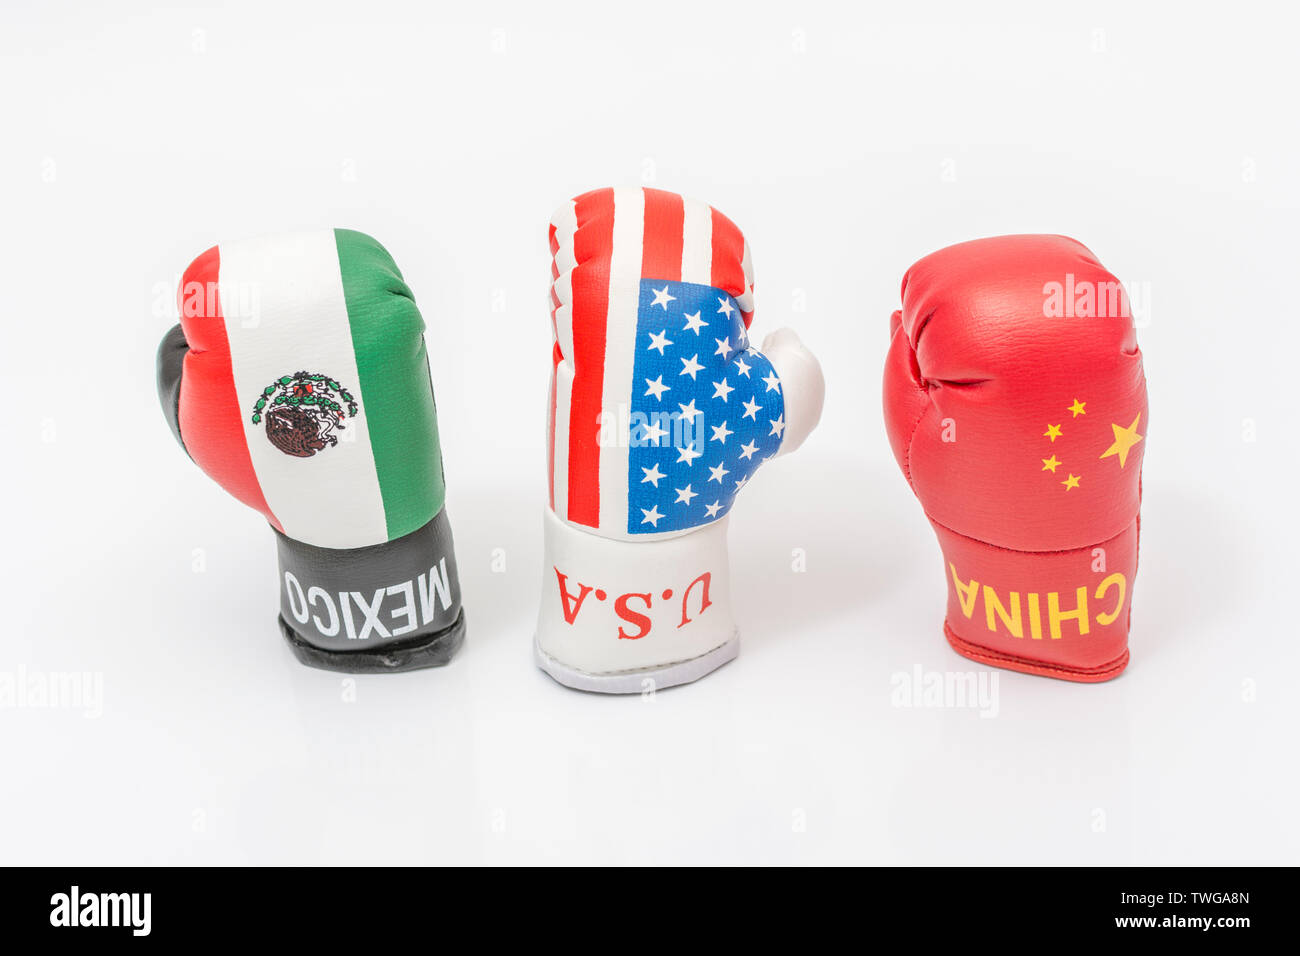 Usa Mexico Trade War Stockfotos Und Bilder Kaufen Alamy